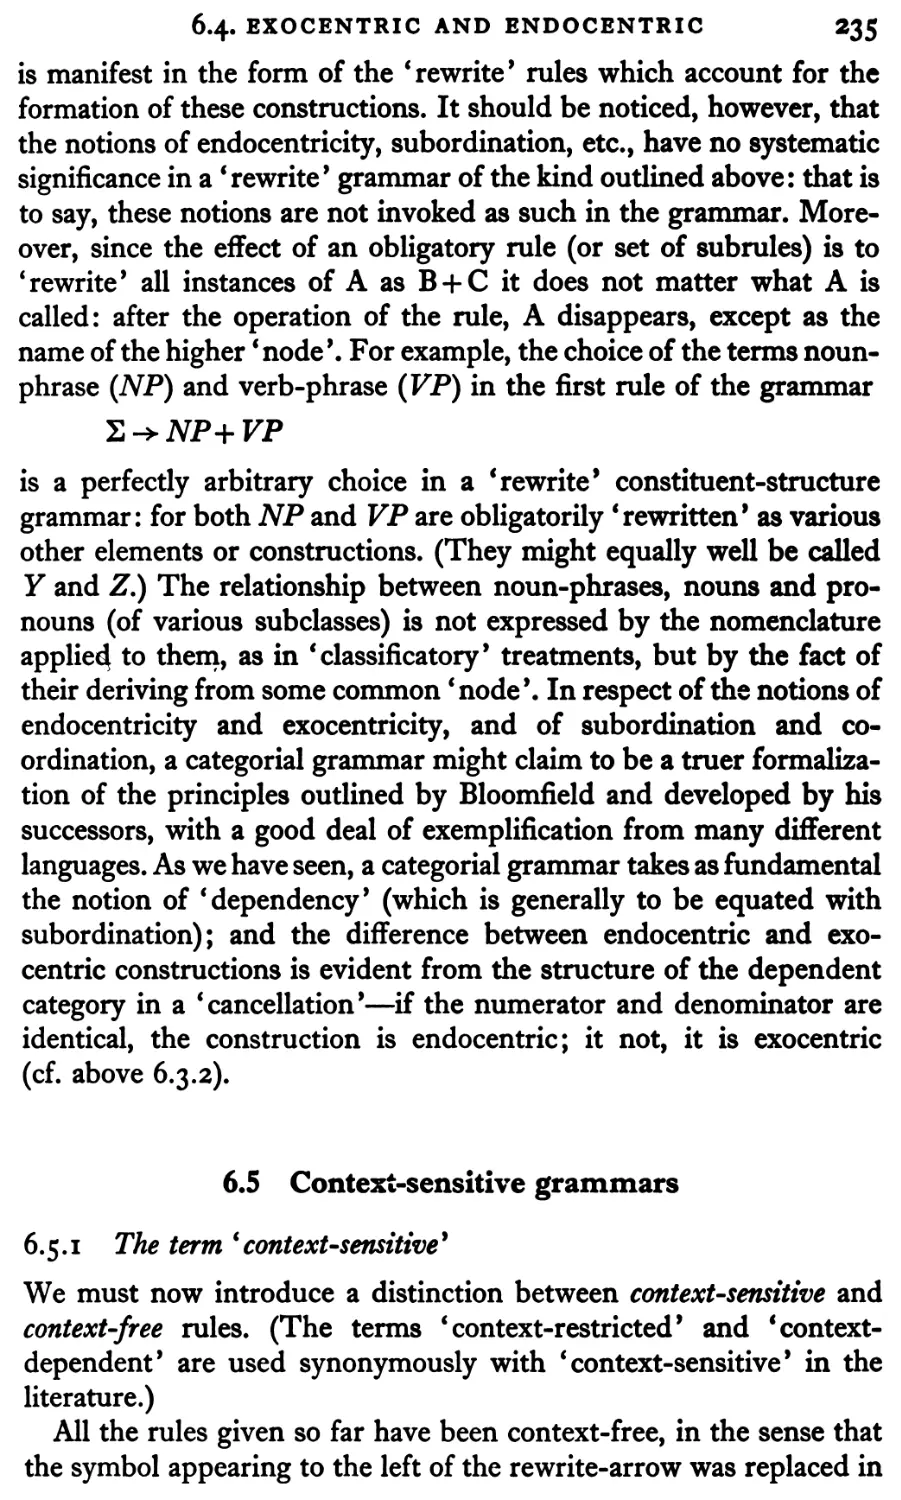 6.5 Context-sensitive grammars